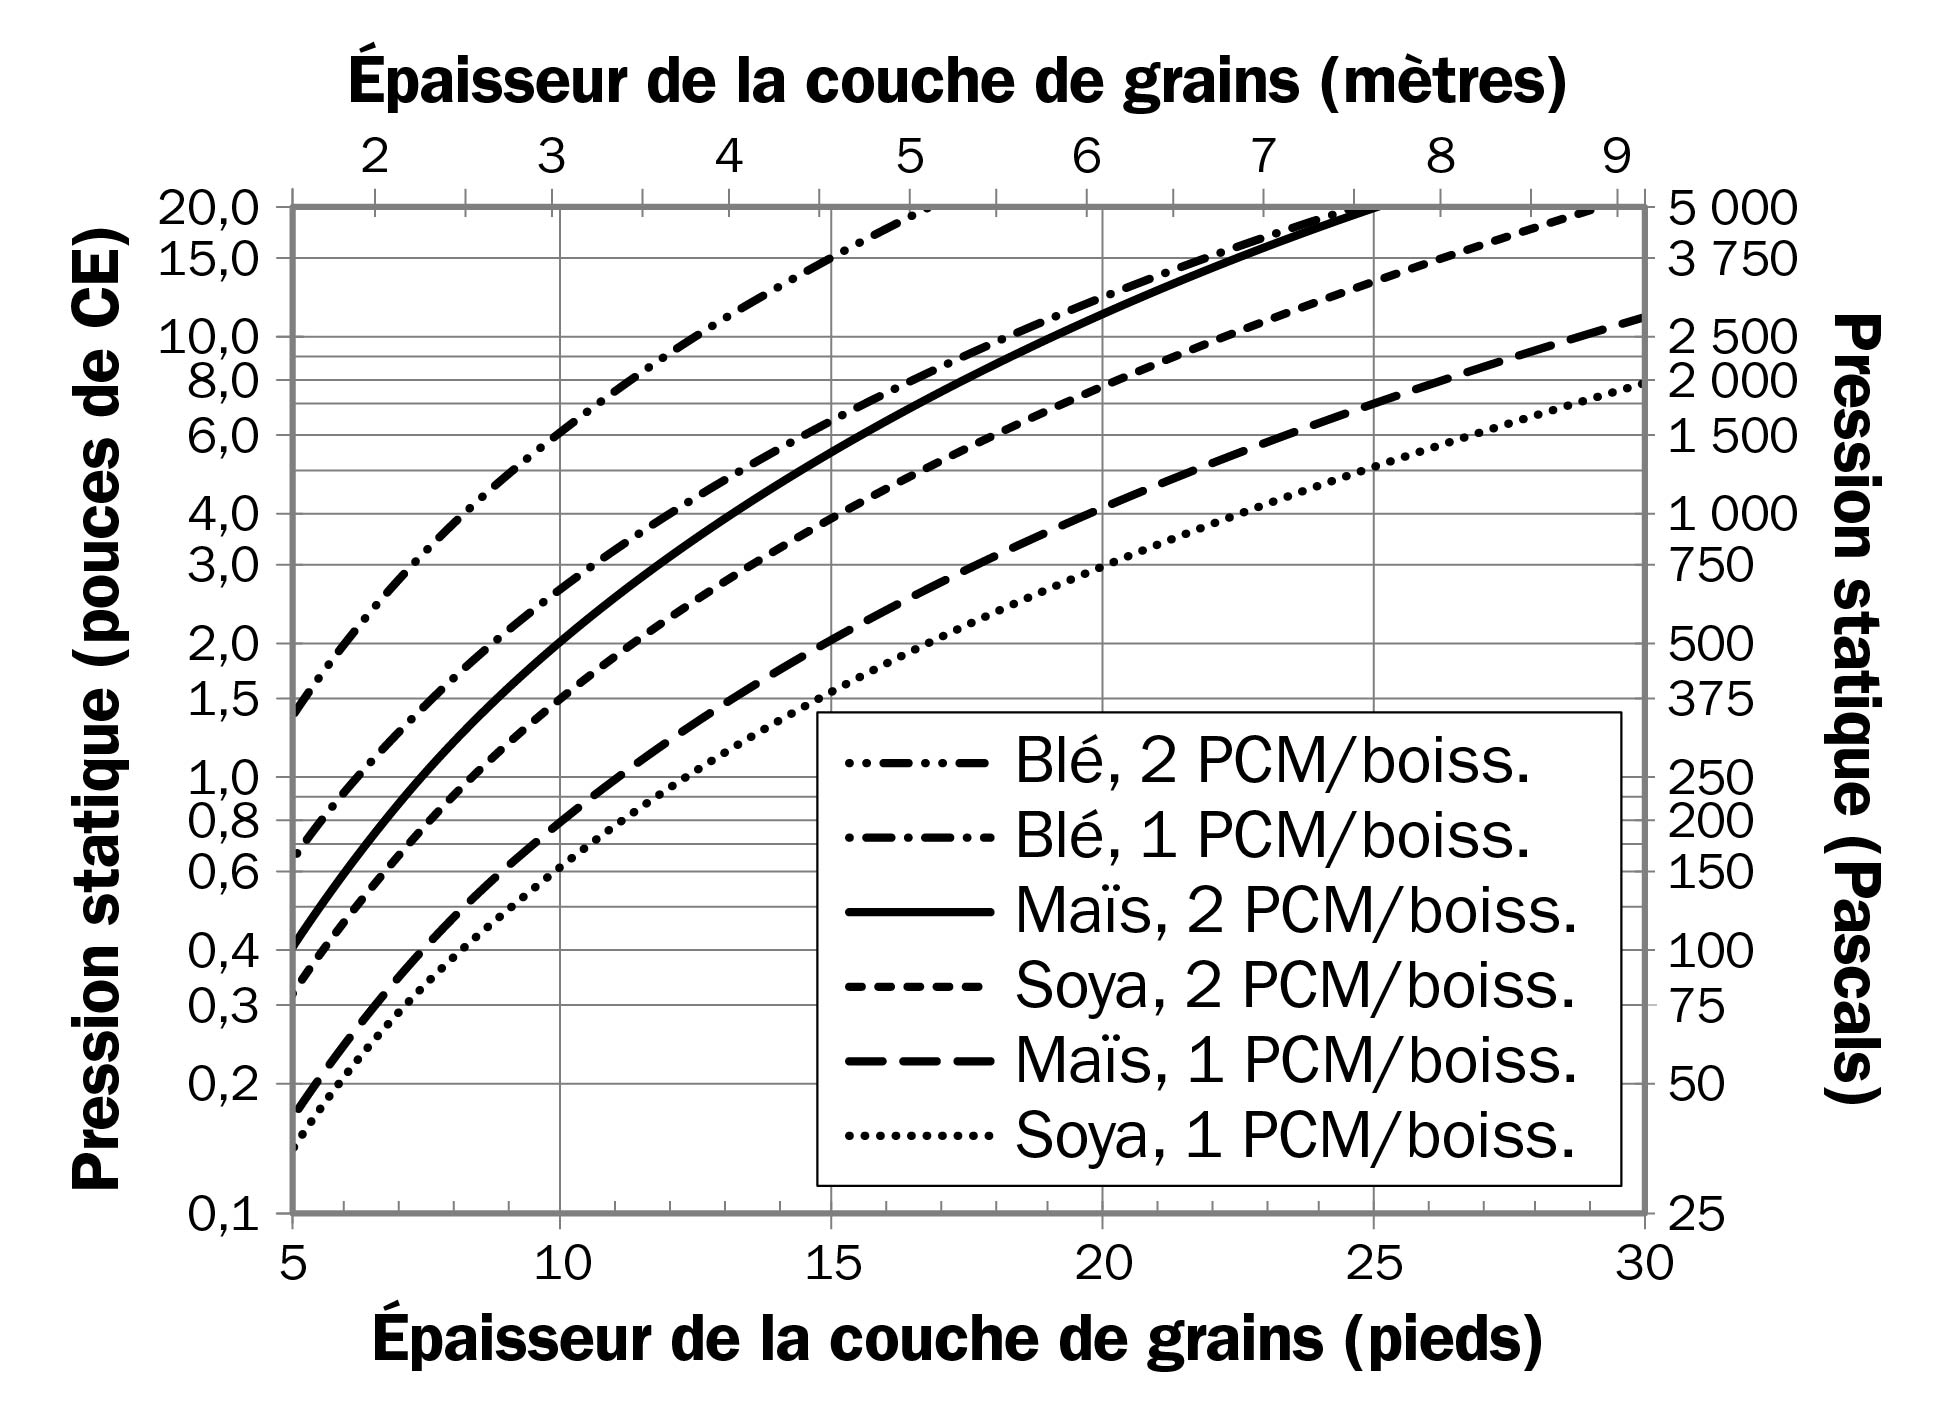 Le graphique montre la variation de la pression statique en fonction de l’épaisseur de la couche de grains pour du maïs, du soya et du blé à des débits d’air de 1 PCM/boisseau et 2 PCM/boisseau. Des débits d’air plus élevés ou de plus grandes épaisseurs de grains sont associés à des pressions statiques plus élevées.